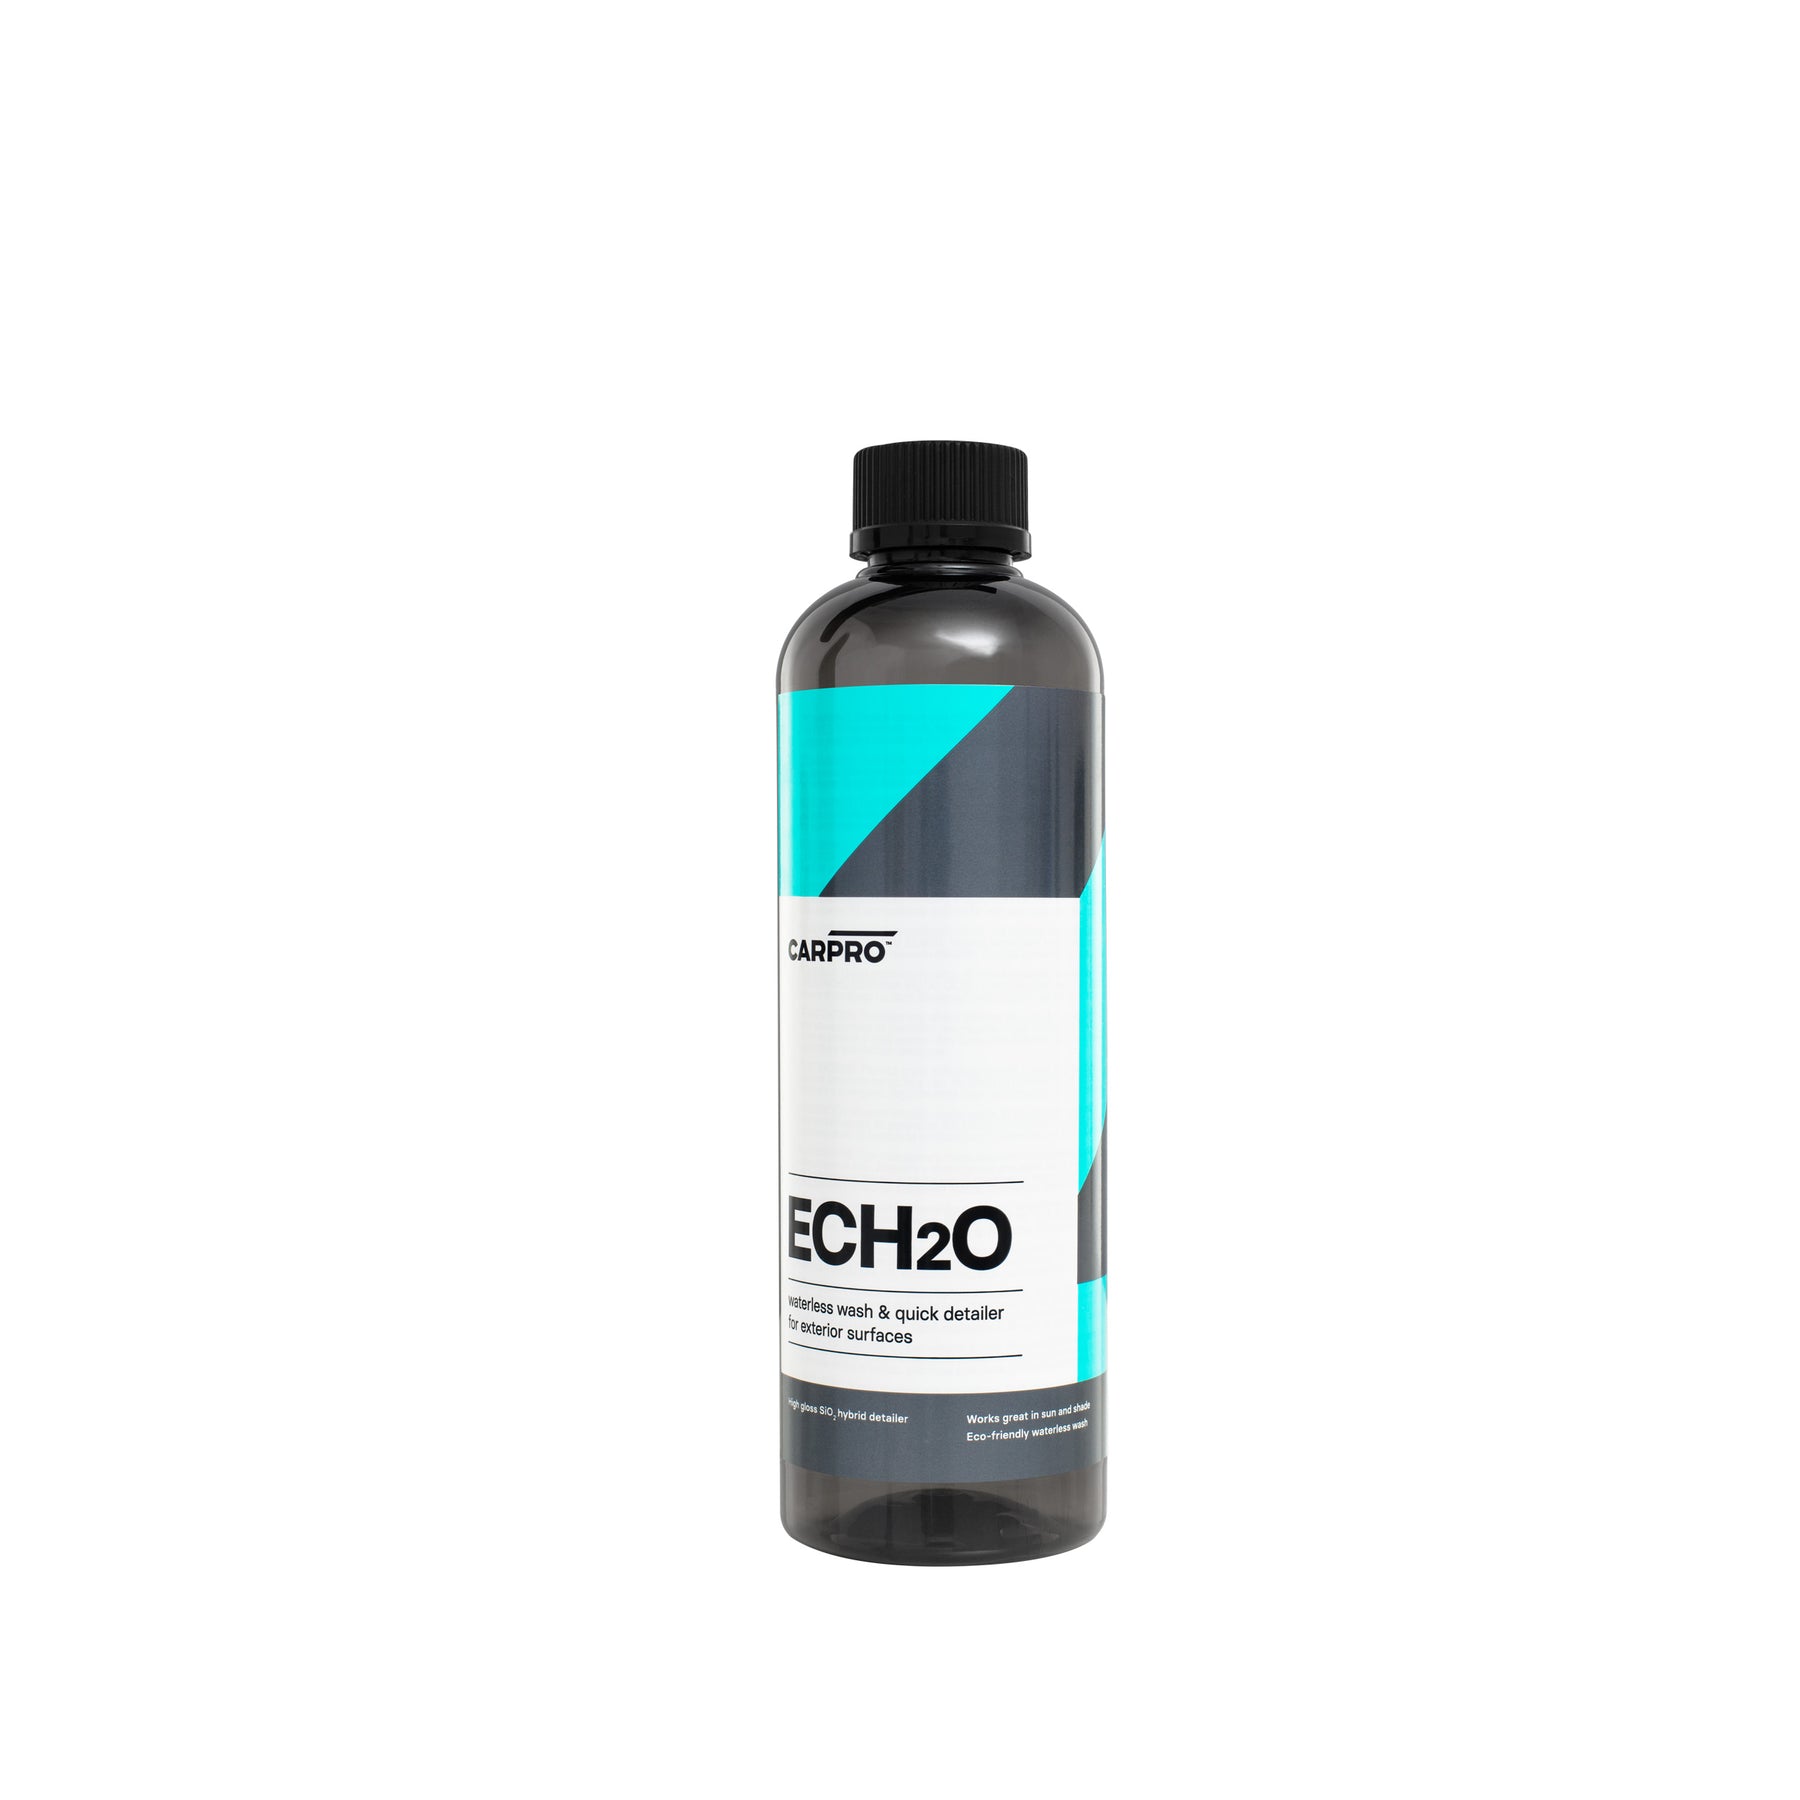 Carpro Kit EcH2O Lavaggio Waterless e Rinsless con Protezione